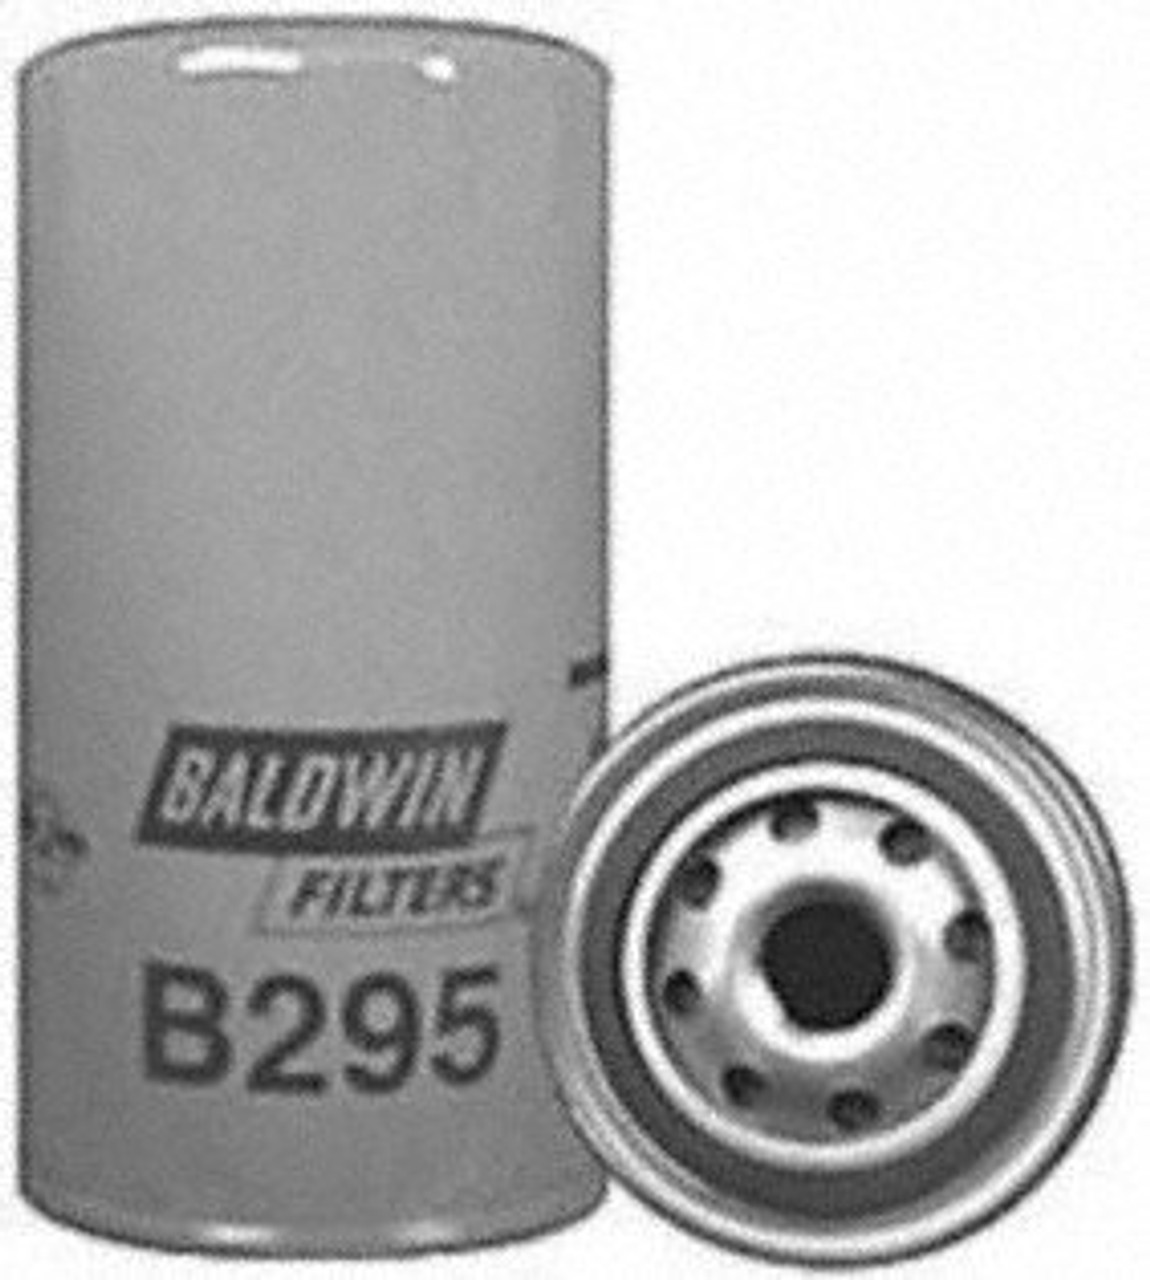 Baldwin B295 Lube Spin-on